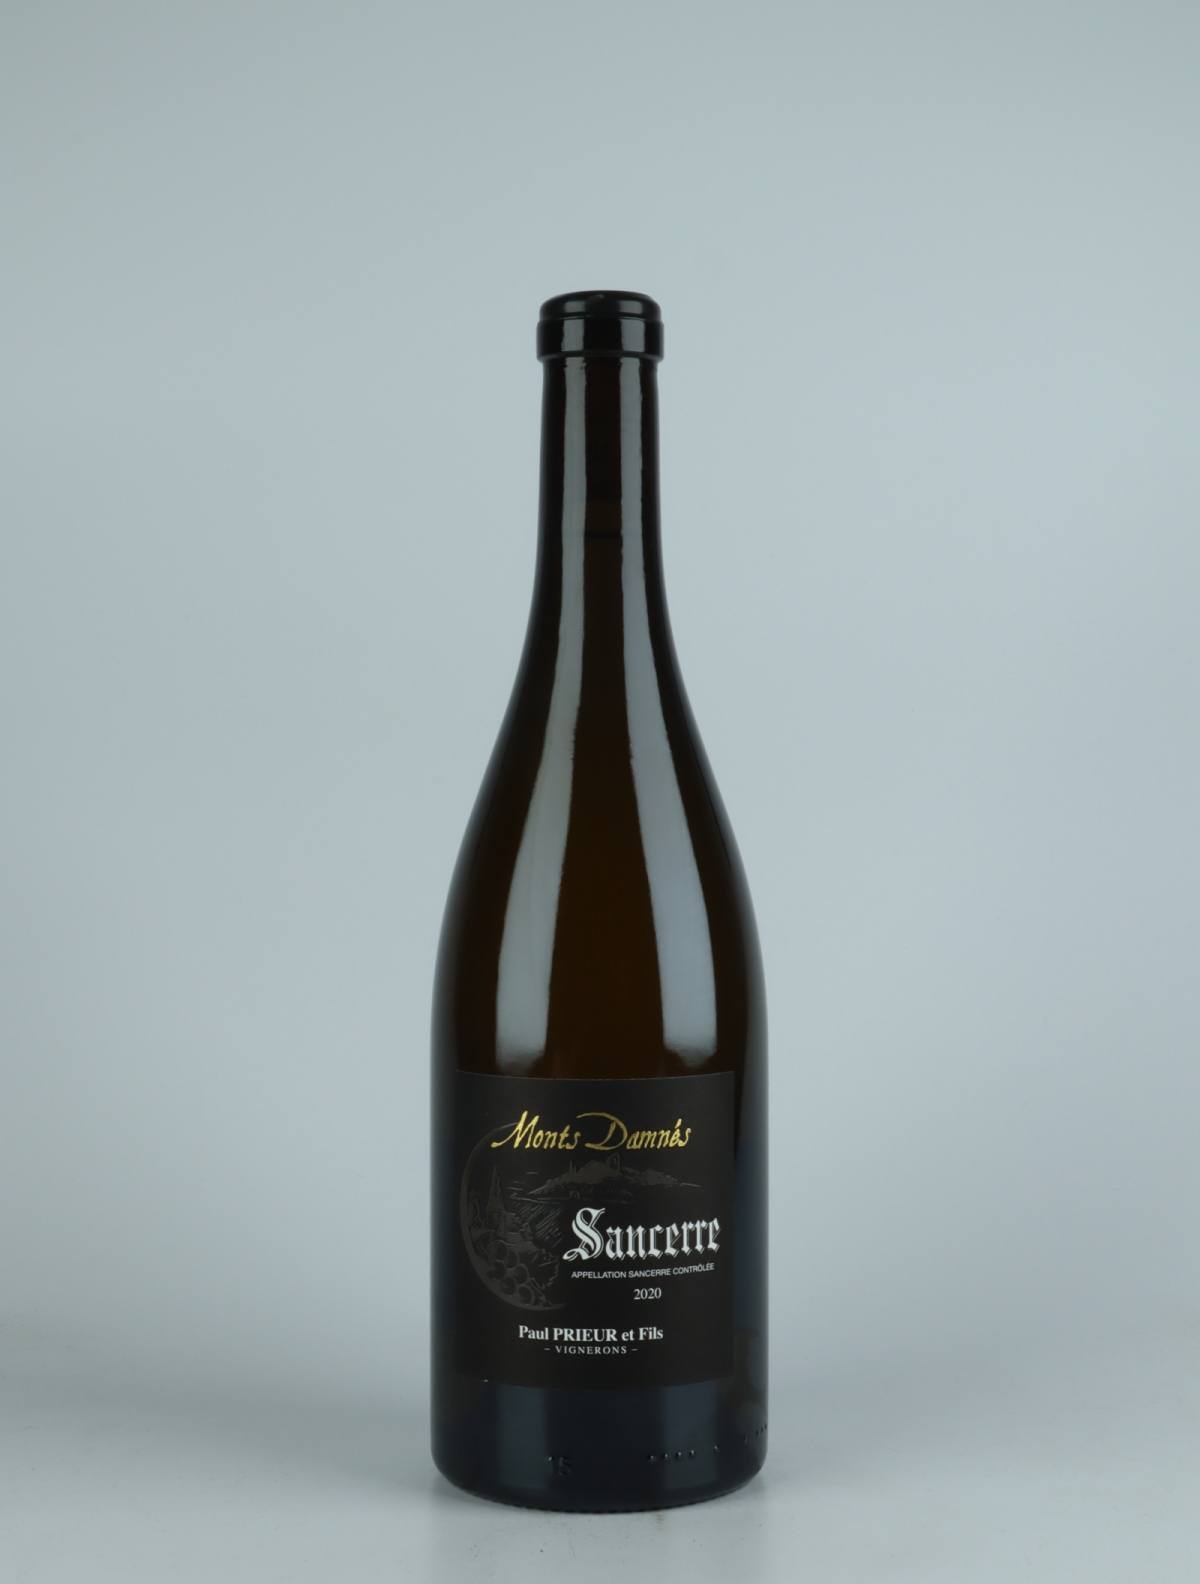 A bottle 2020 Sancerre - Les Monts Damnés White wine from Paul Prieur et Fils, Loire in France